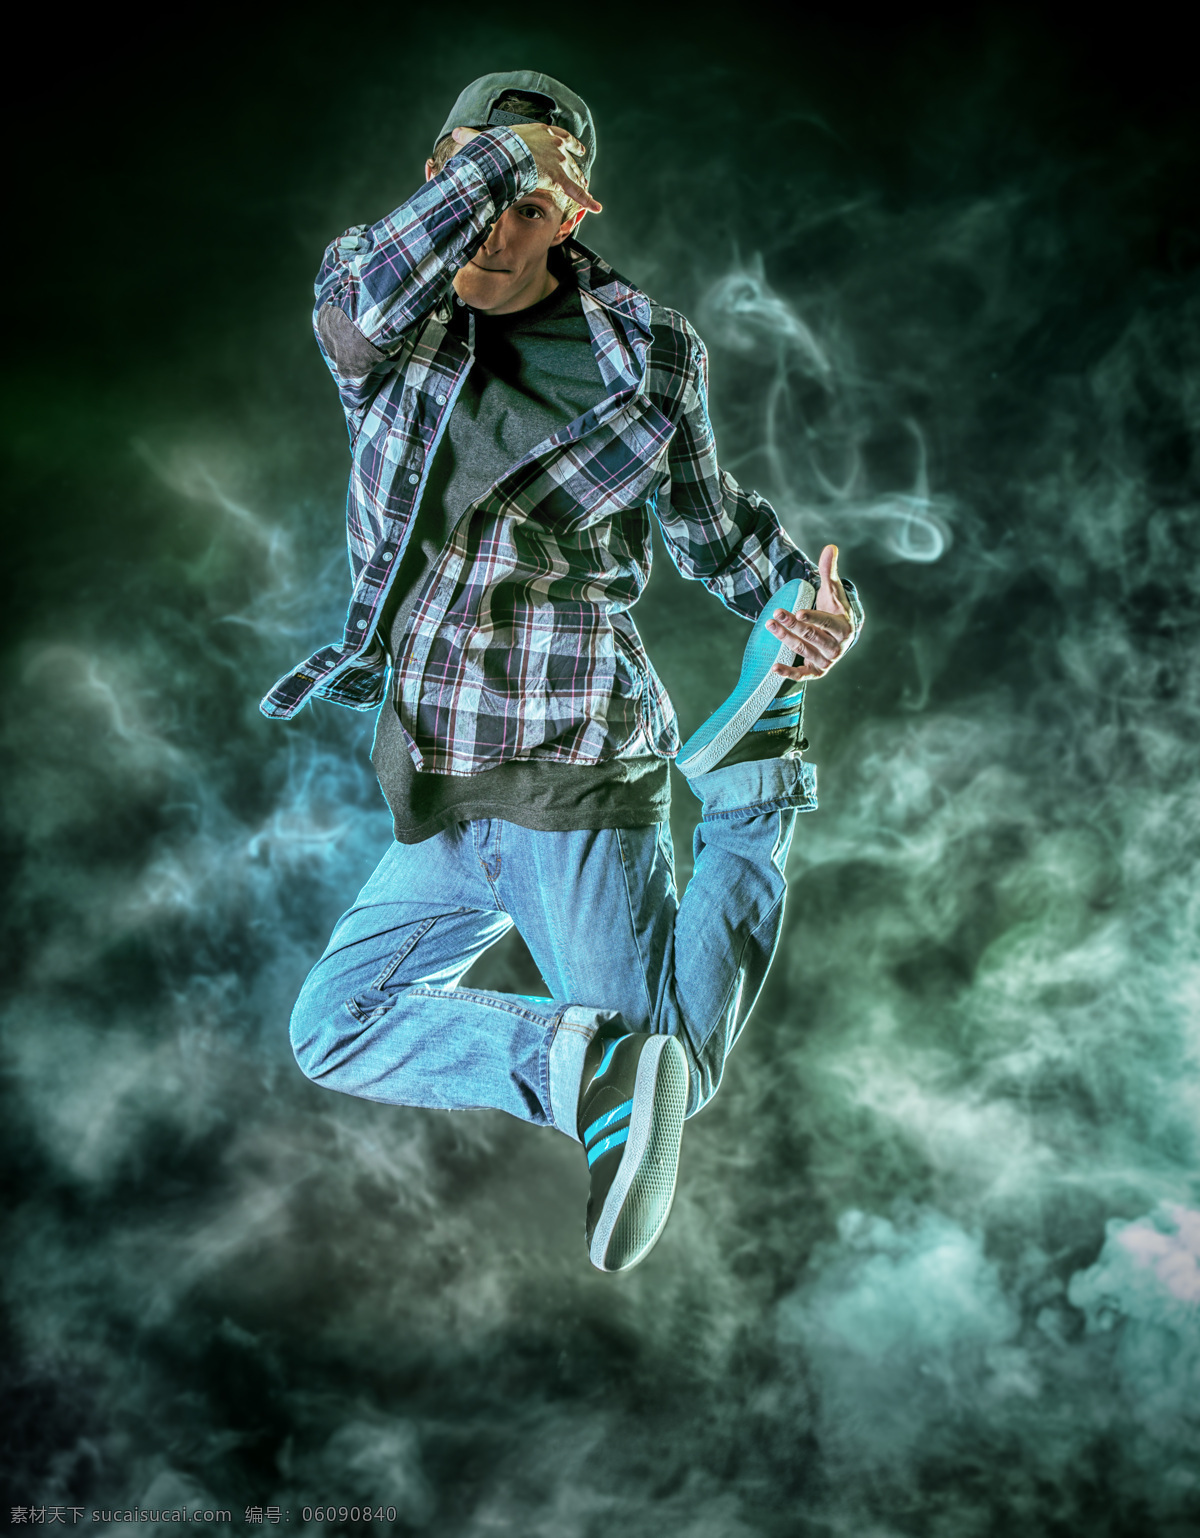 跳跃 男舞者 烟雾背景 街舞 嘻哈 舞蹈 舞者 男人 男孩 其他人物 人物图片